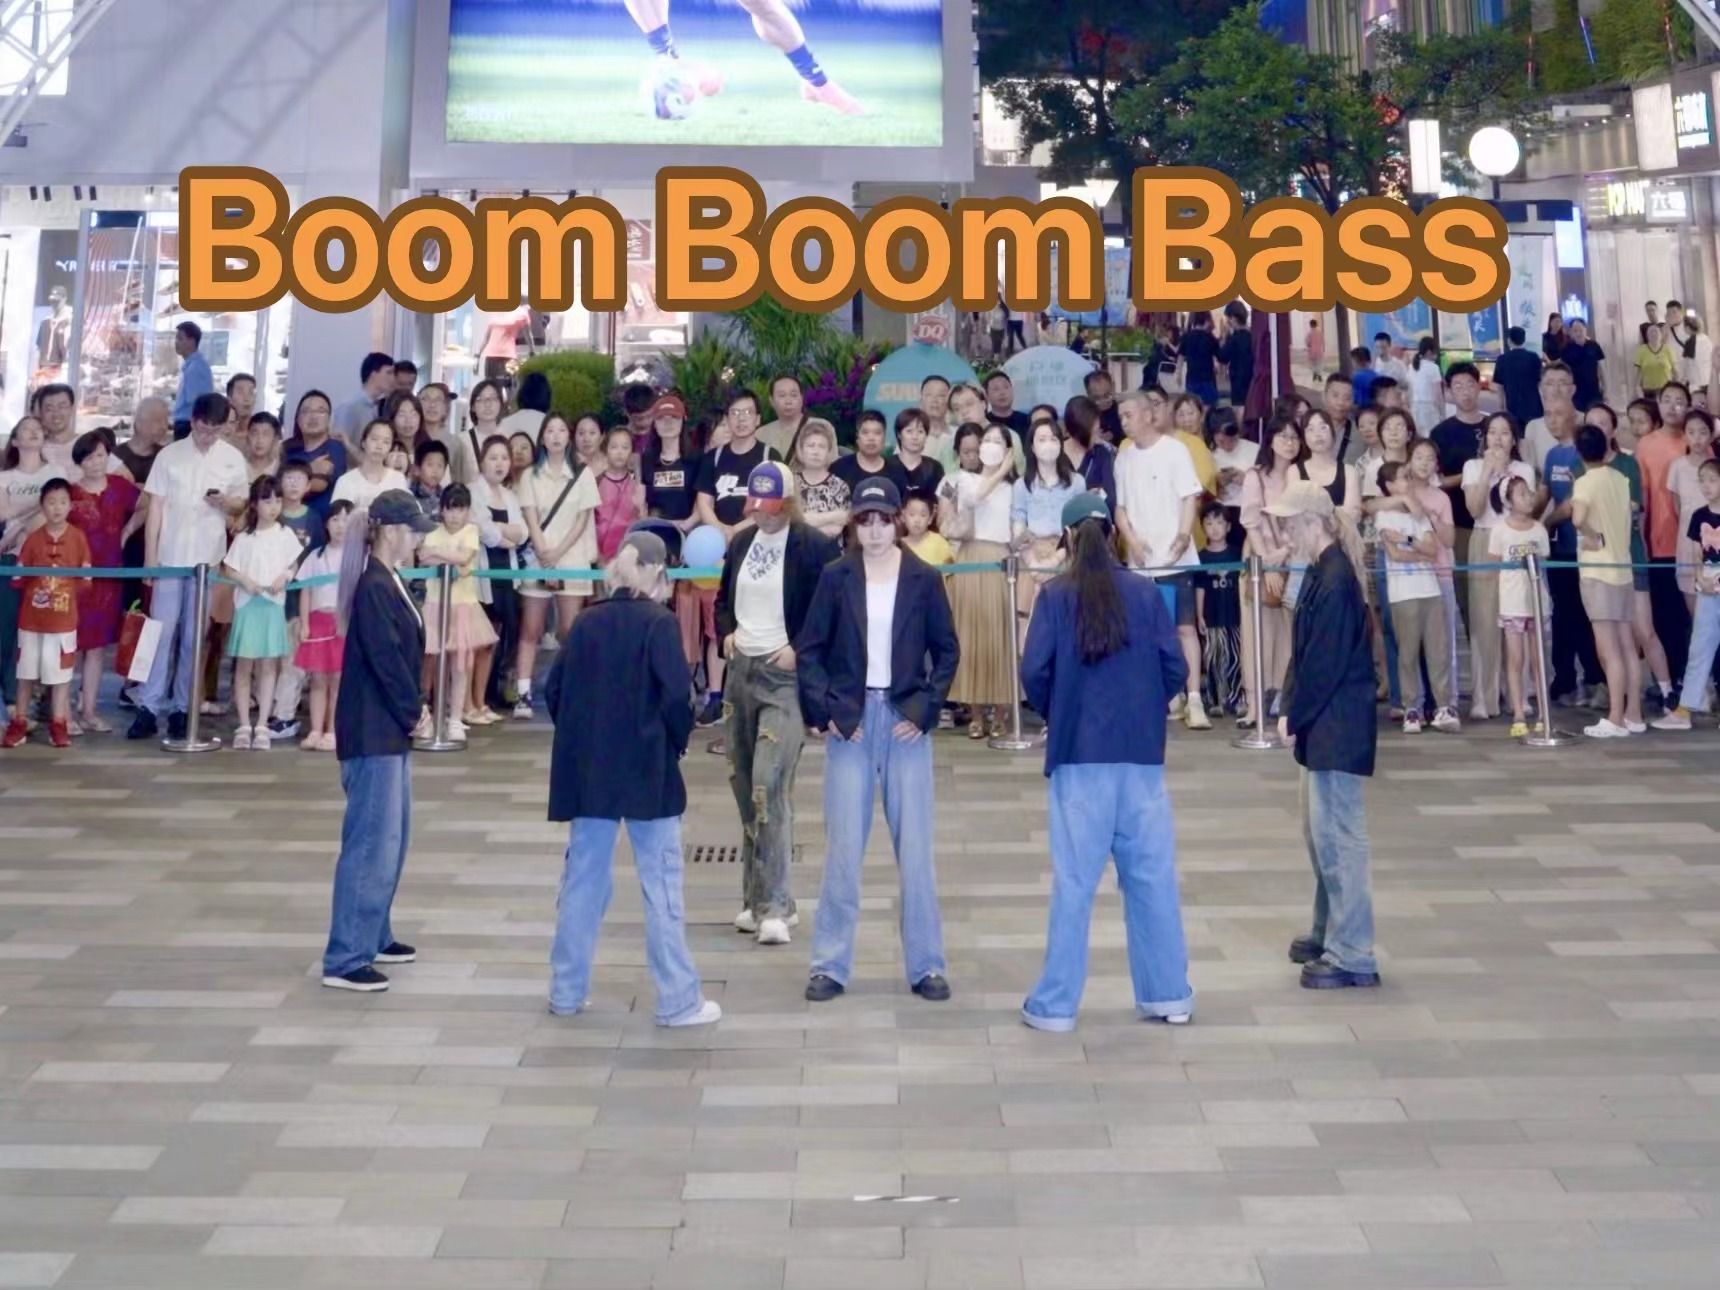 【RIIZE】上海首车Boom Boom Bass 路演 挑战全网妆造最还原